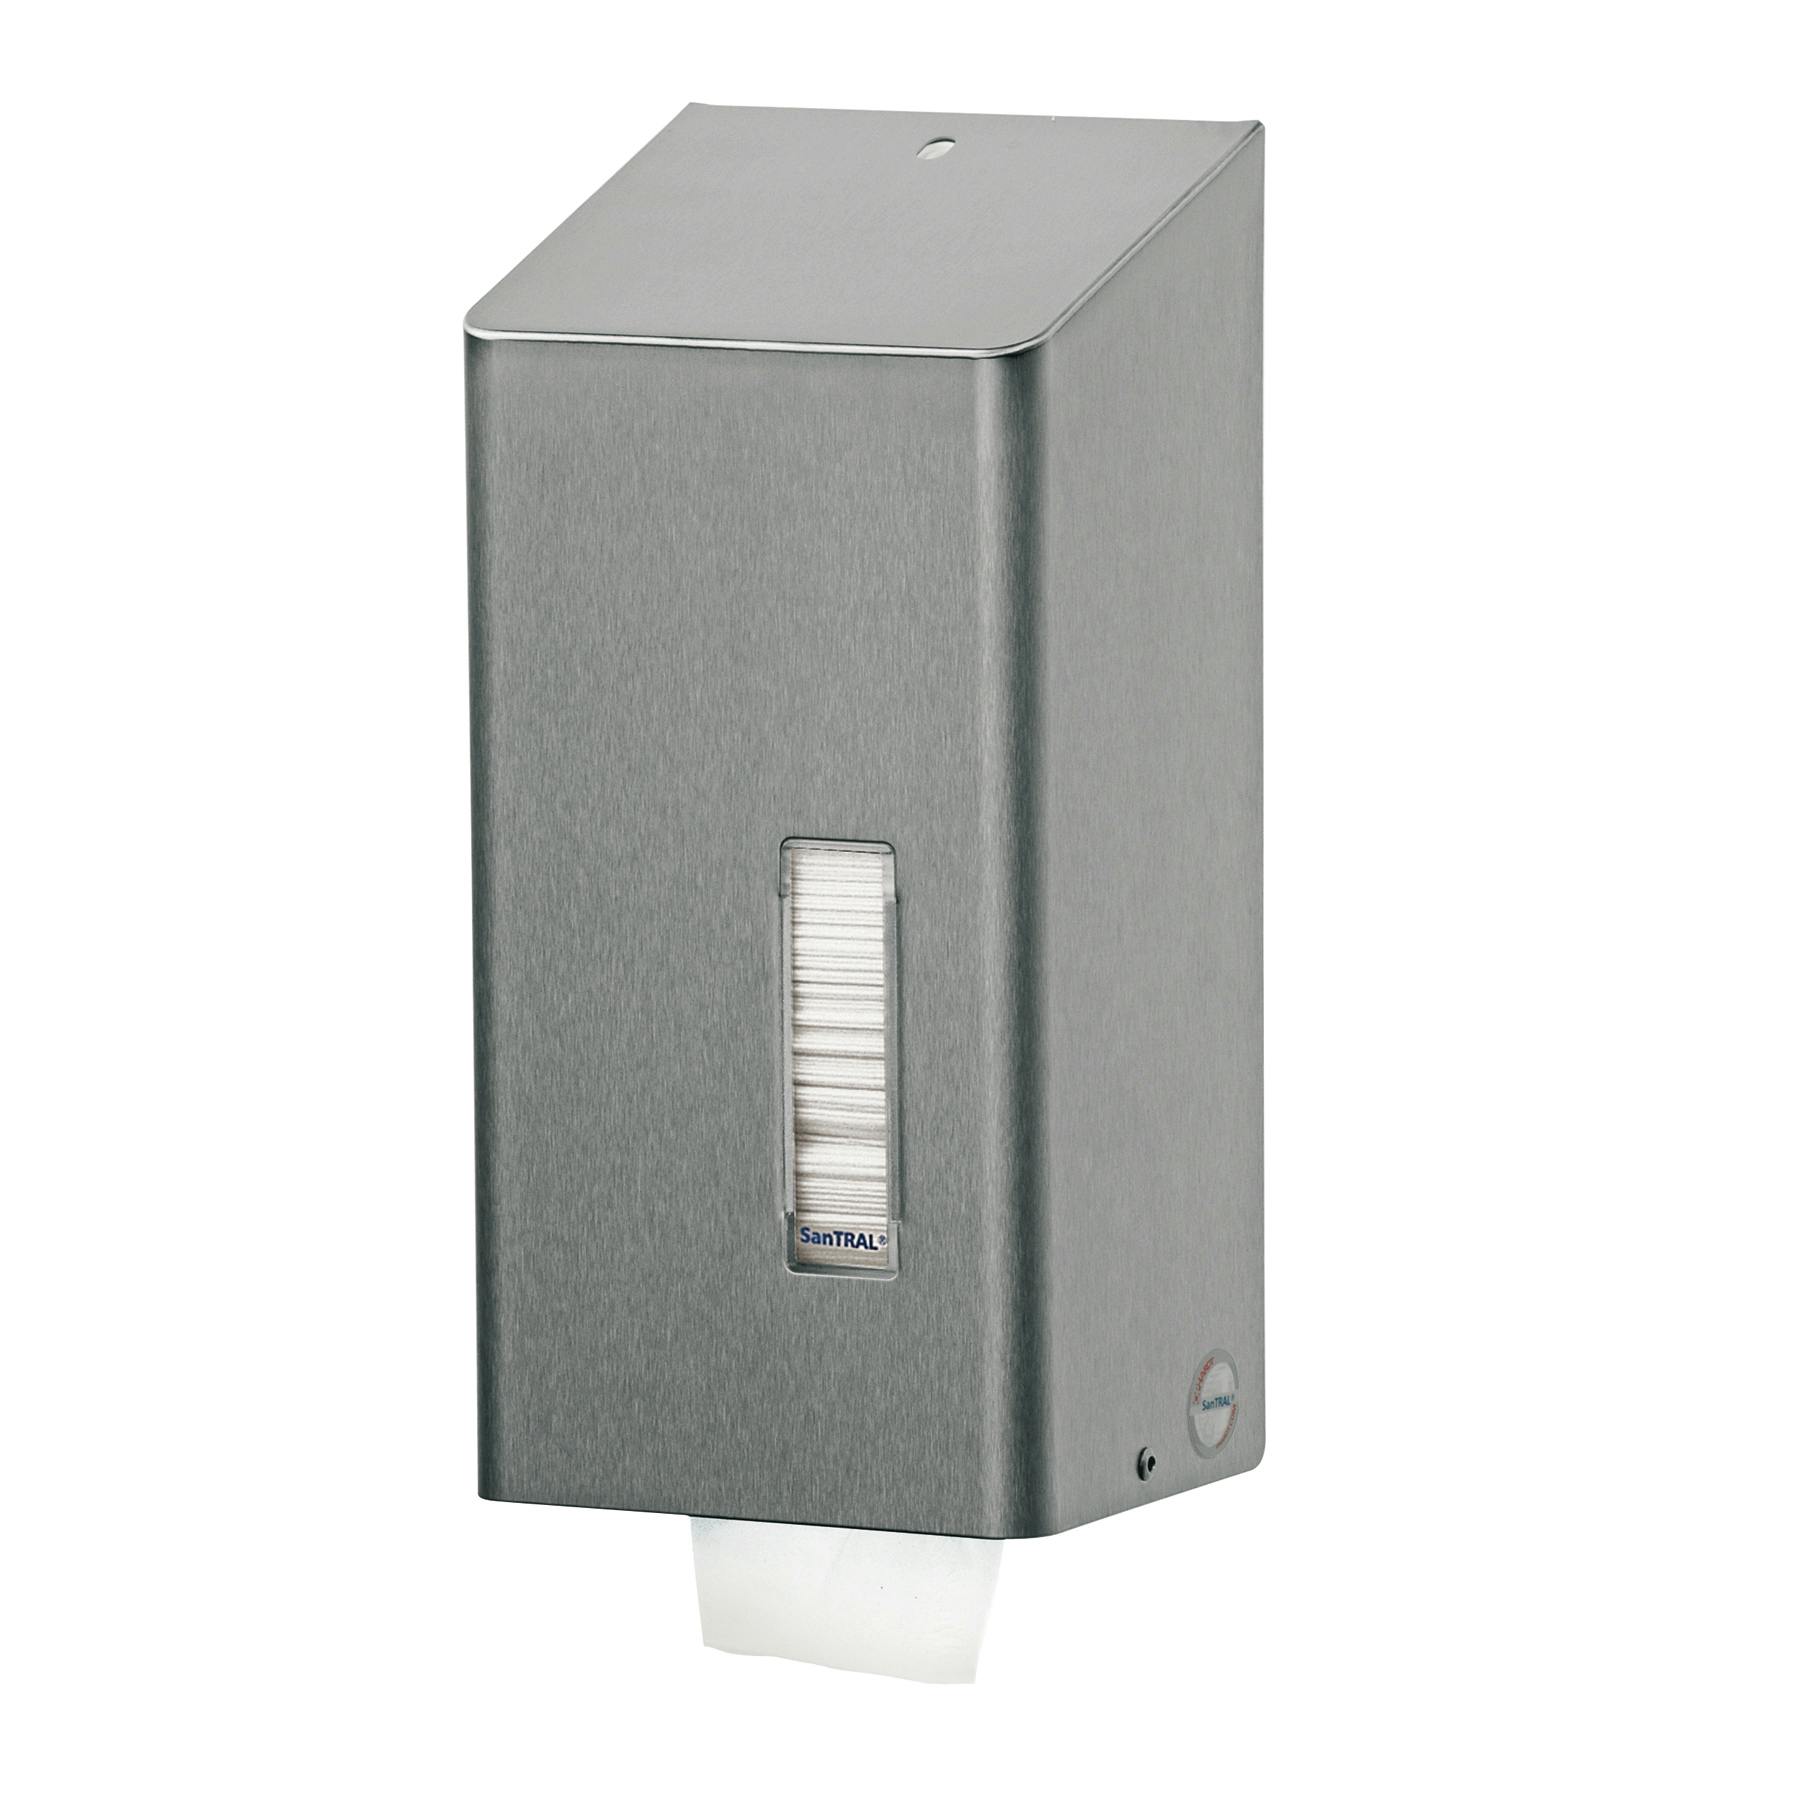 Santral S1161800 classic toiletpapierdispenser Voor losse vellen, type BUU 1 E